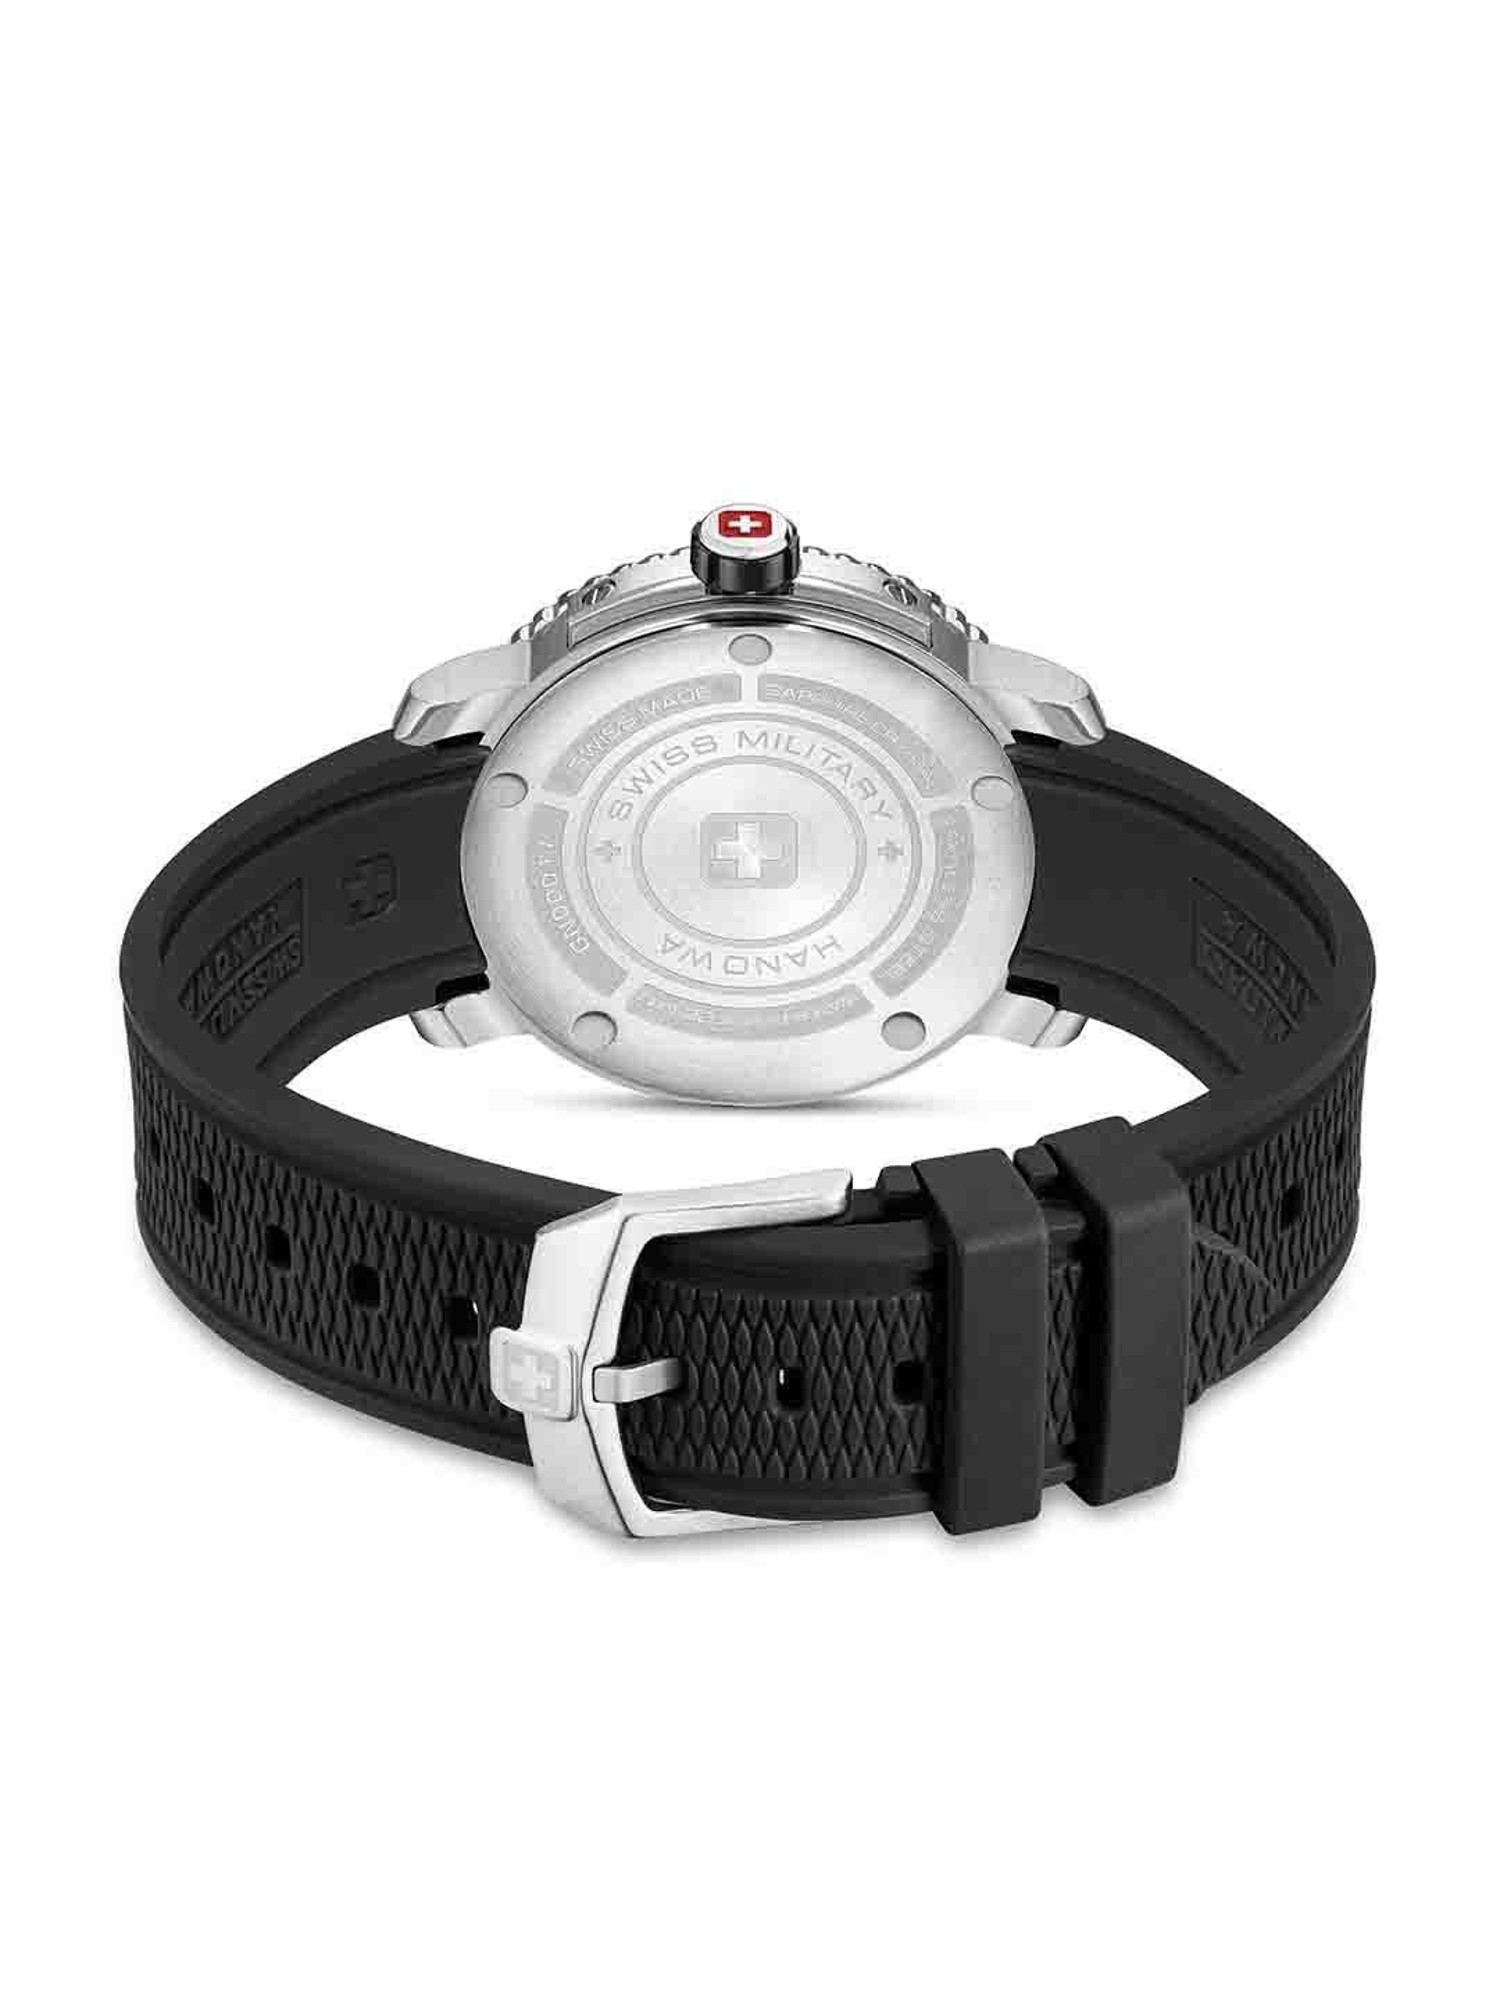 Buy Swiss Military Hanowa Black Watch Men Marlin at for Best Tata @ CLiQ Analog Price SMWGN0001701